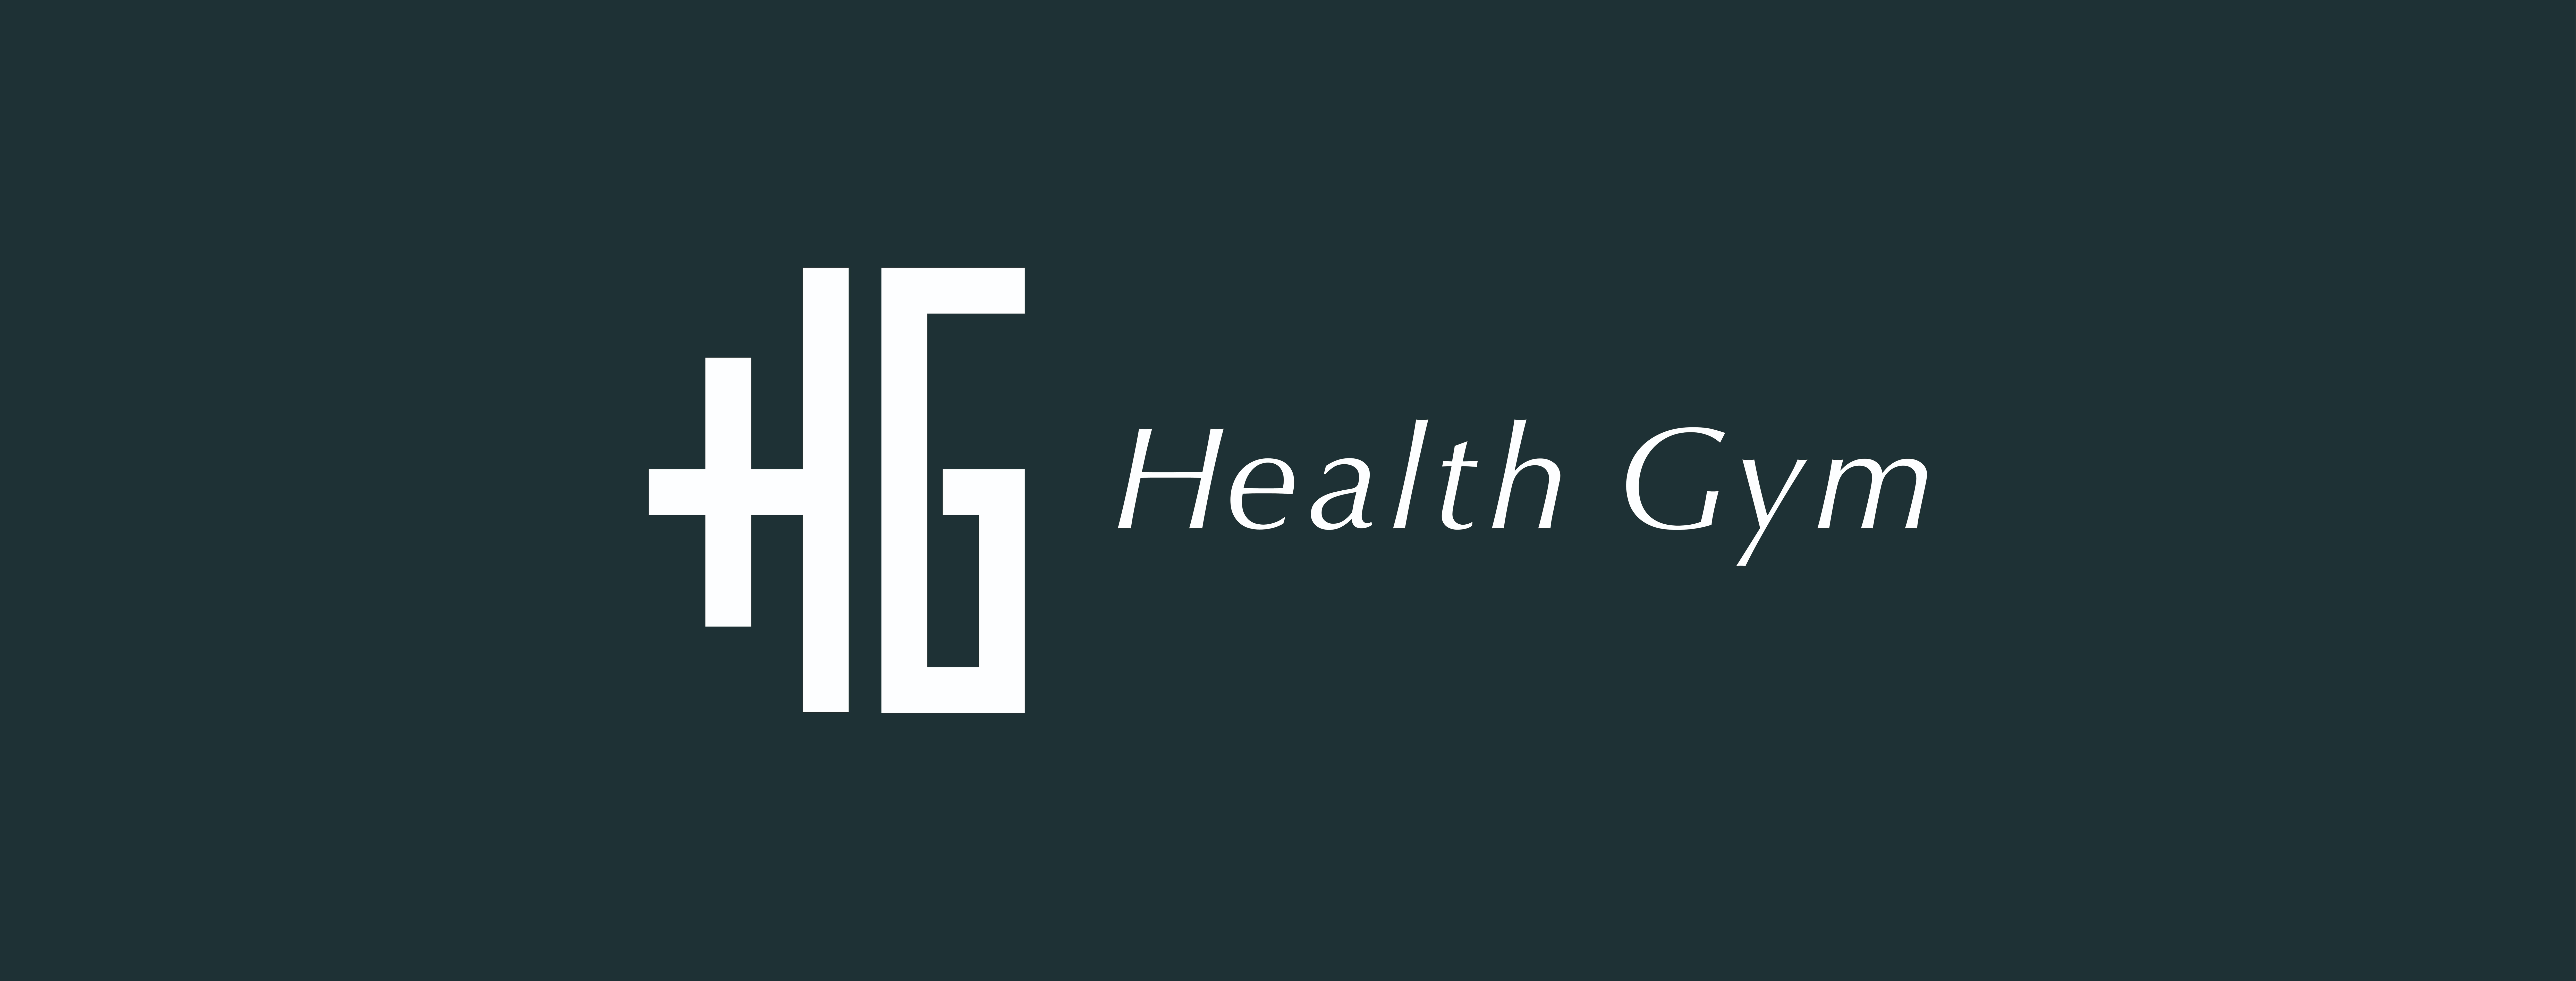 Health Gym